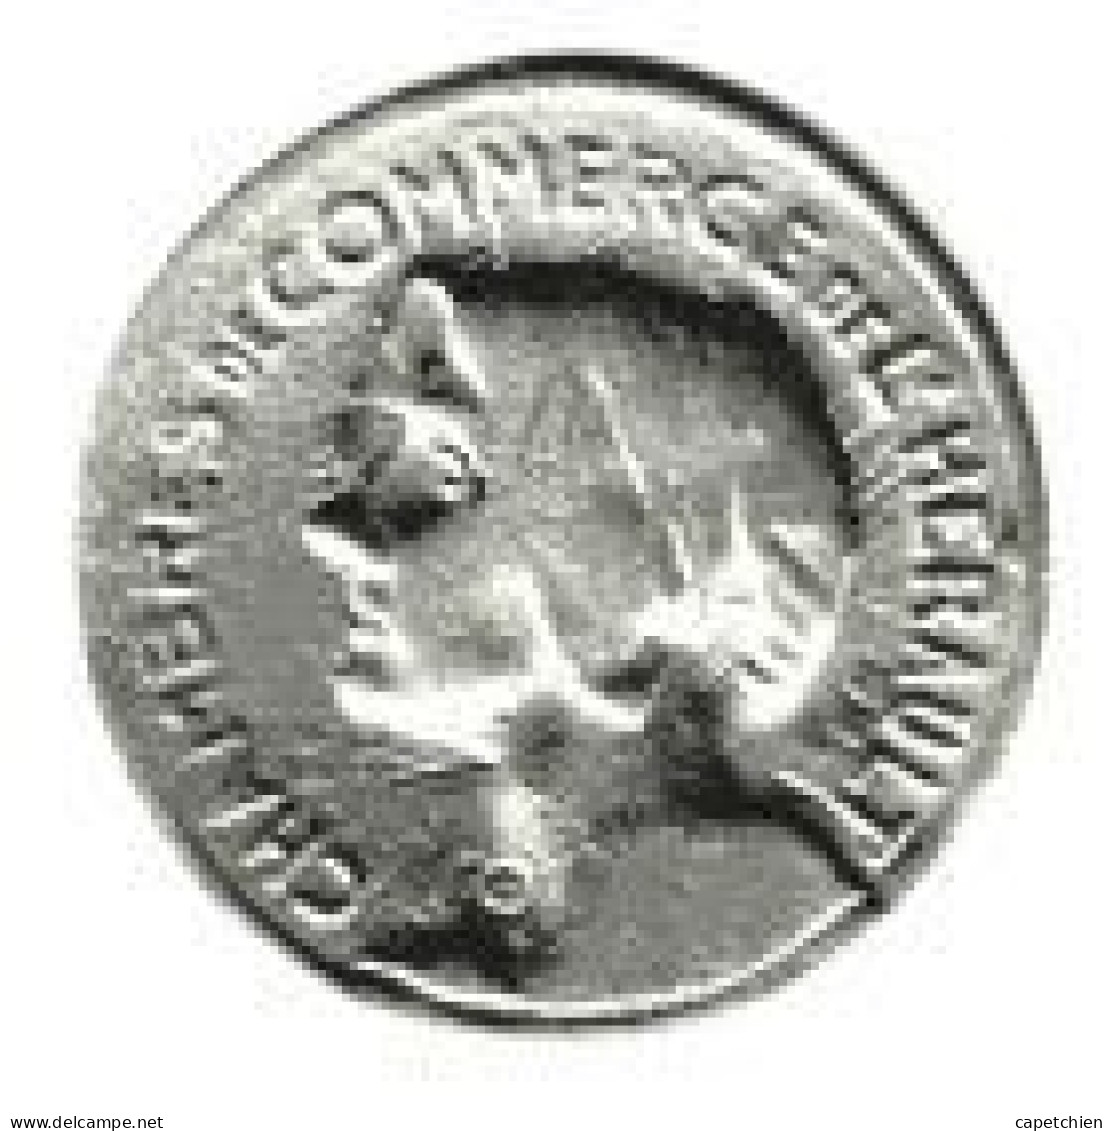 FRANCE/ NECESSITE / CHAMBRE DE COMMERCE DE L'HERAULT / 25 CENT / 1917-1920 / ZINC / 5.16 G / 28 Mm - Monetari / Di Necessità